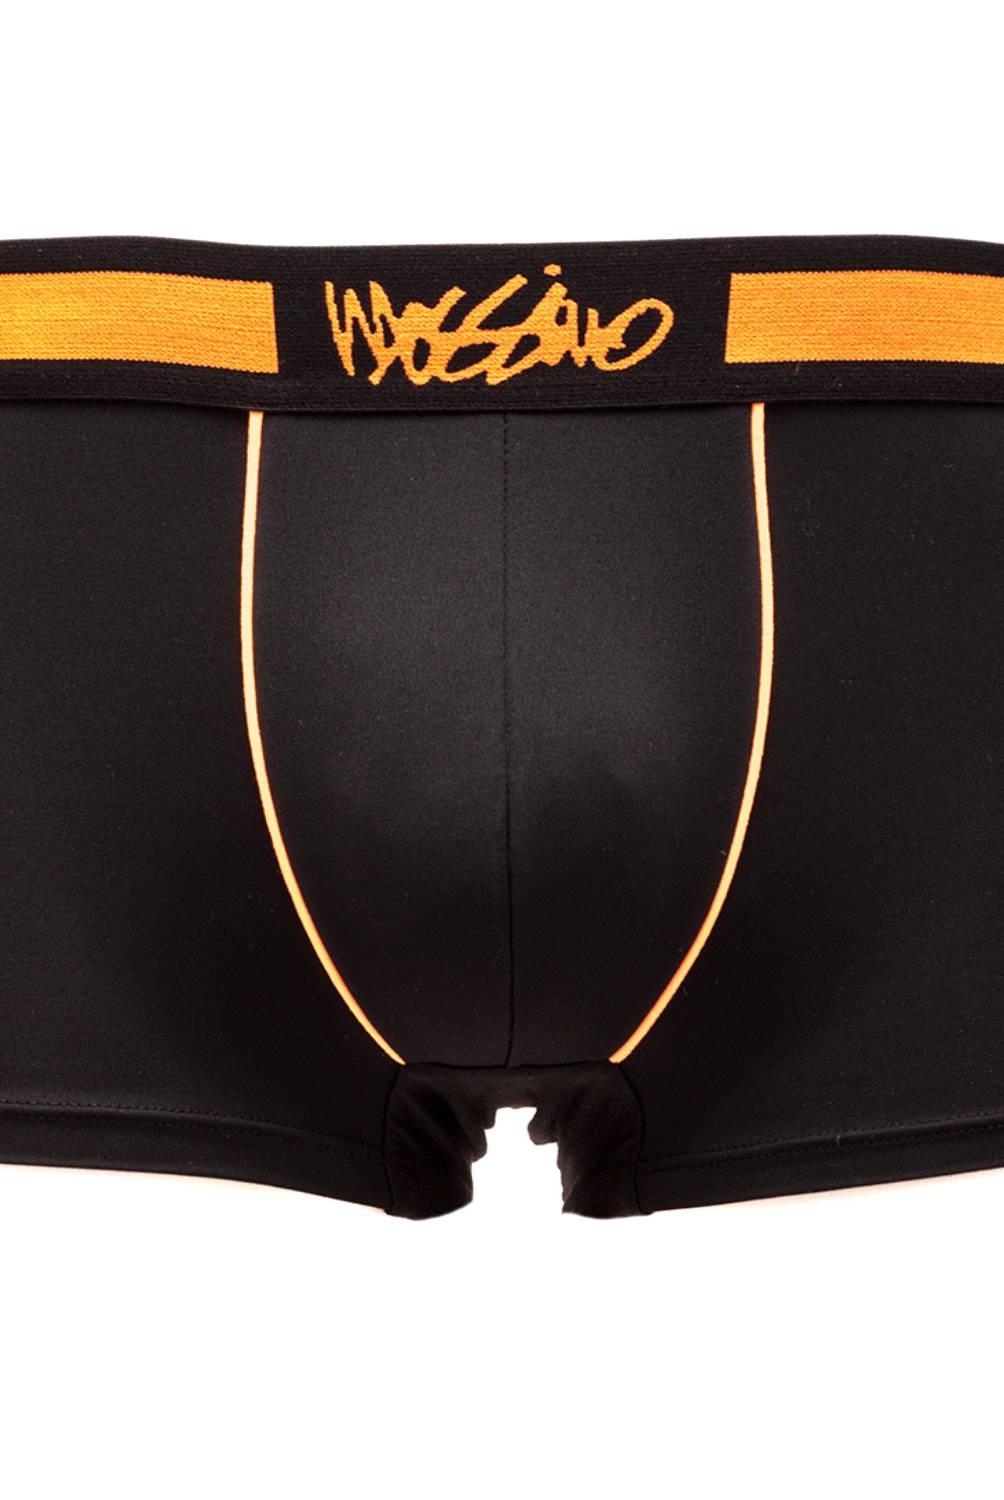 MOSSIMO - Pack de 2 Boxer Hombre